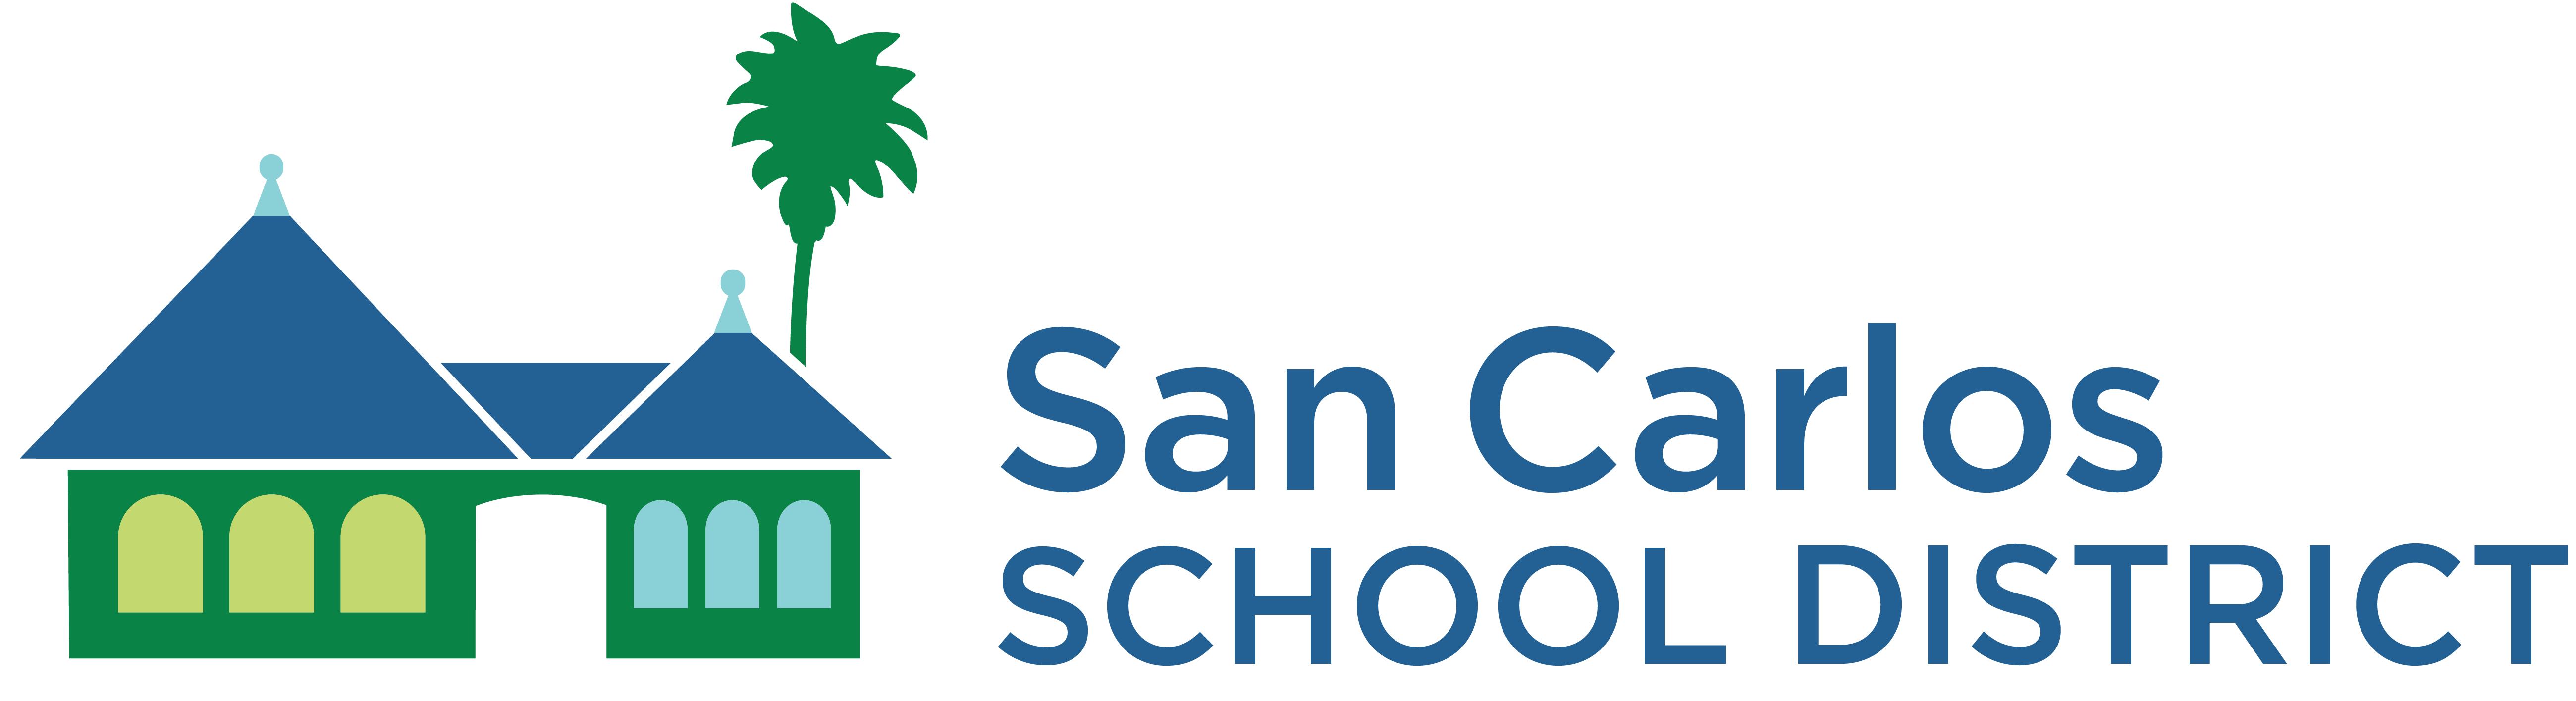 San Carlos School District Logo